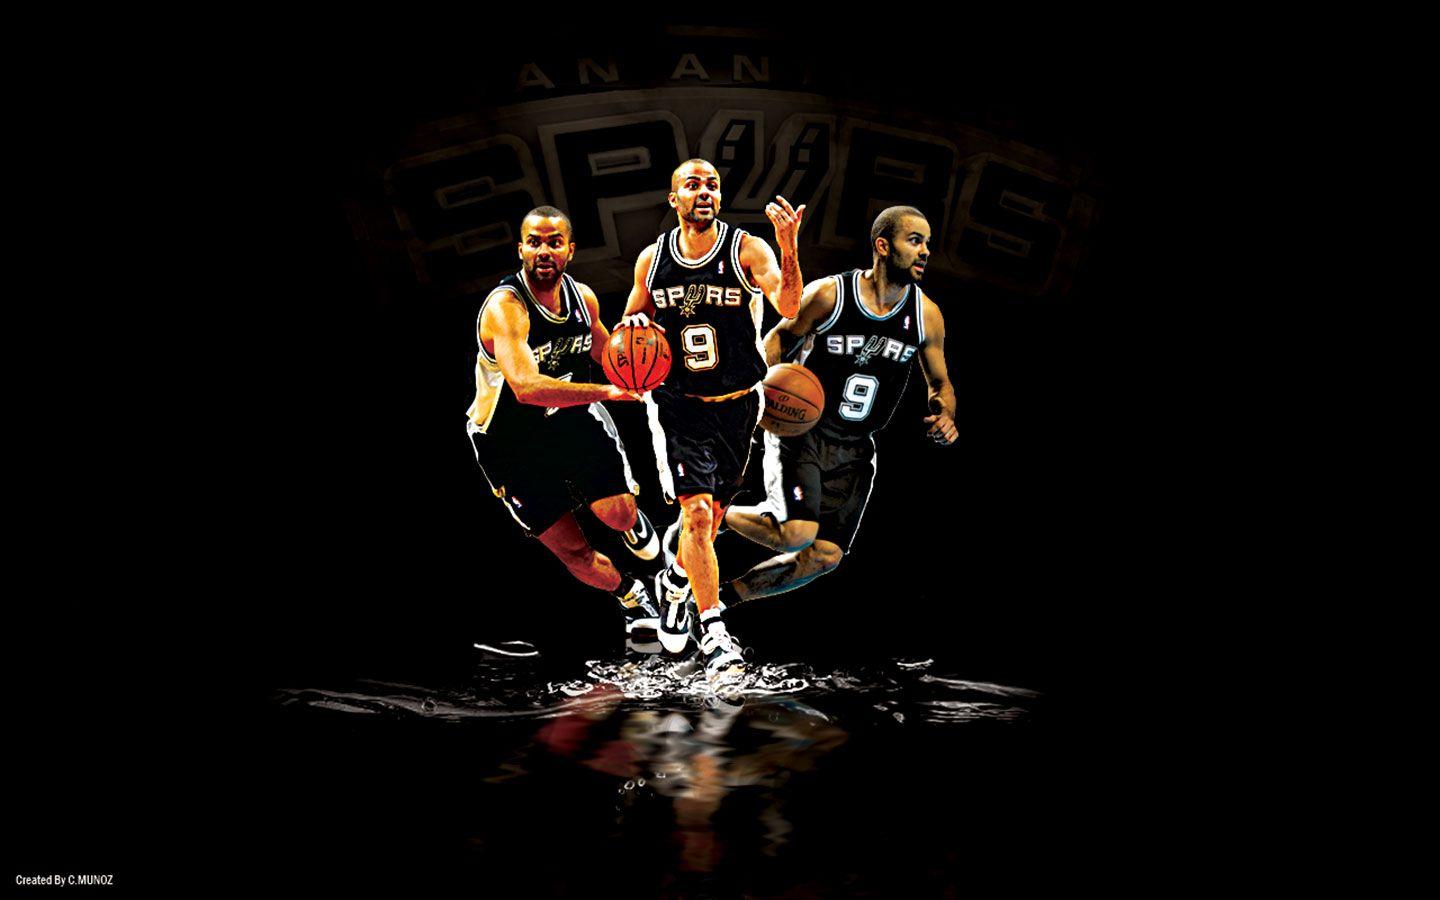 San Antonio Spurs wallpaper